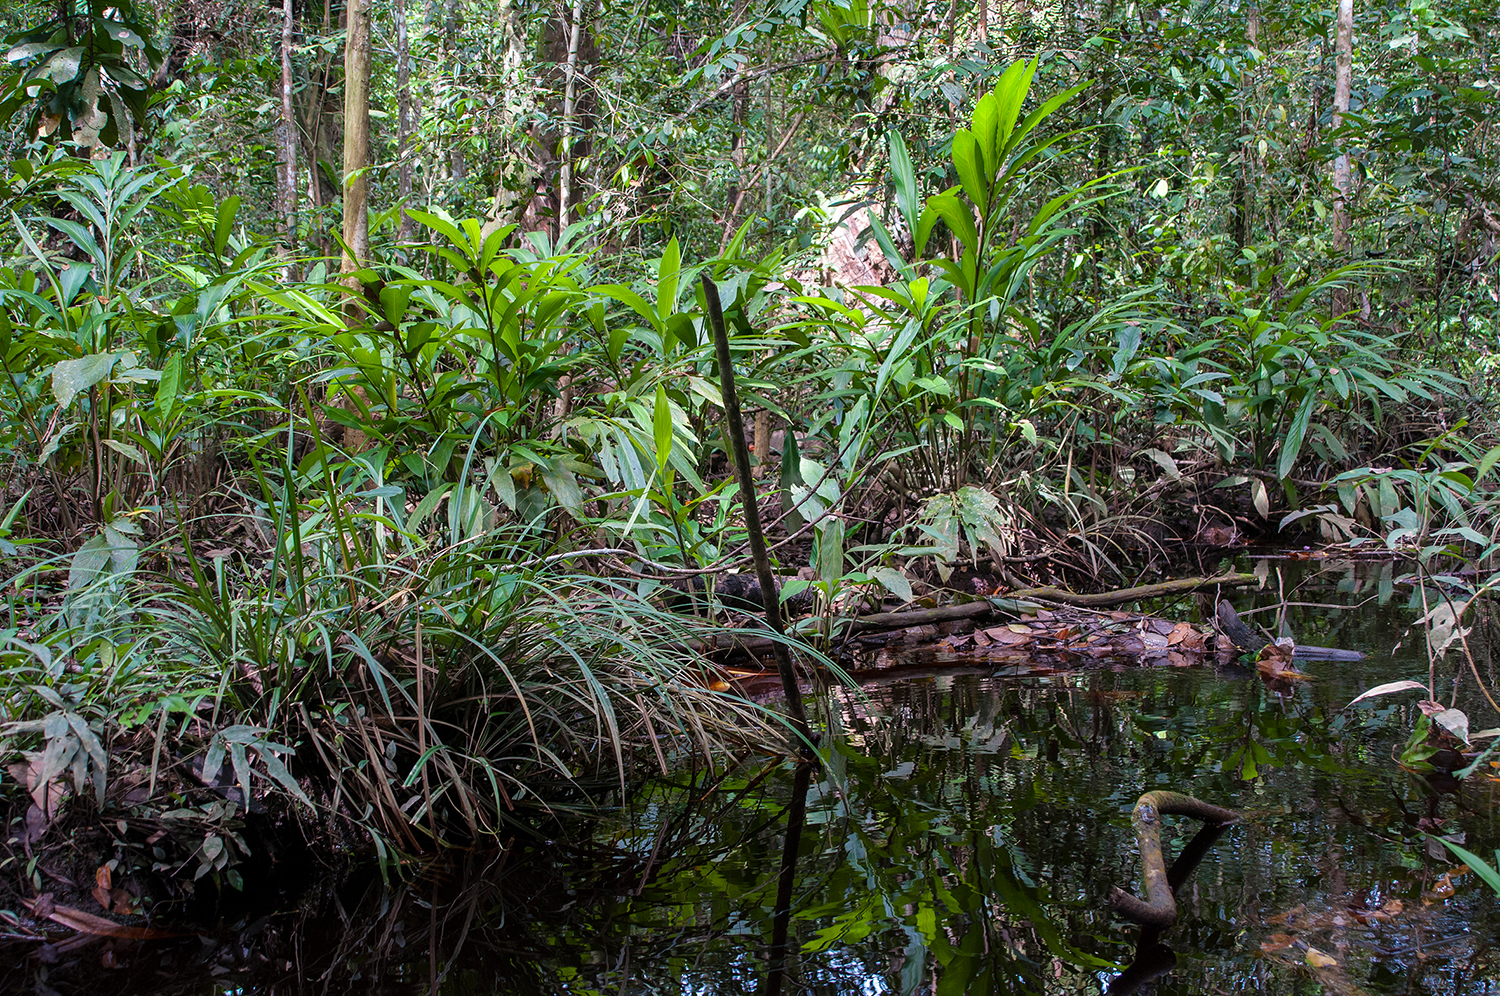 Ein Torfsumpfwald Habitat in Sarawak, Borneo, wo Paedocypris micromegethes vorkommt. Foto: Lukas Rüber.